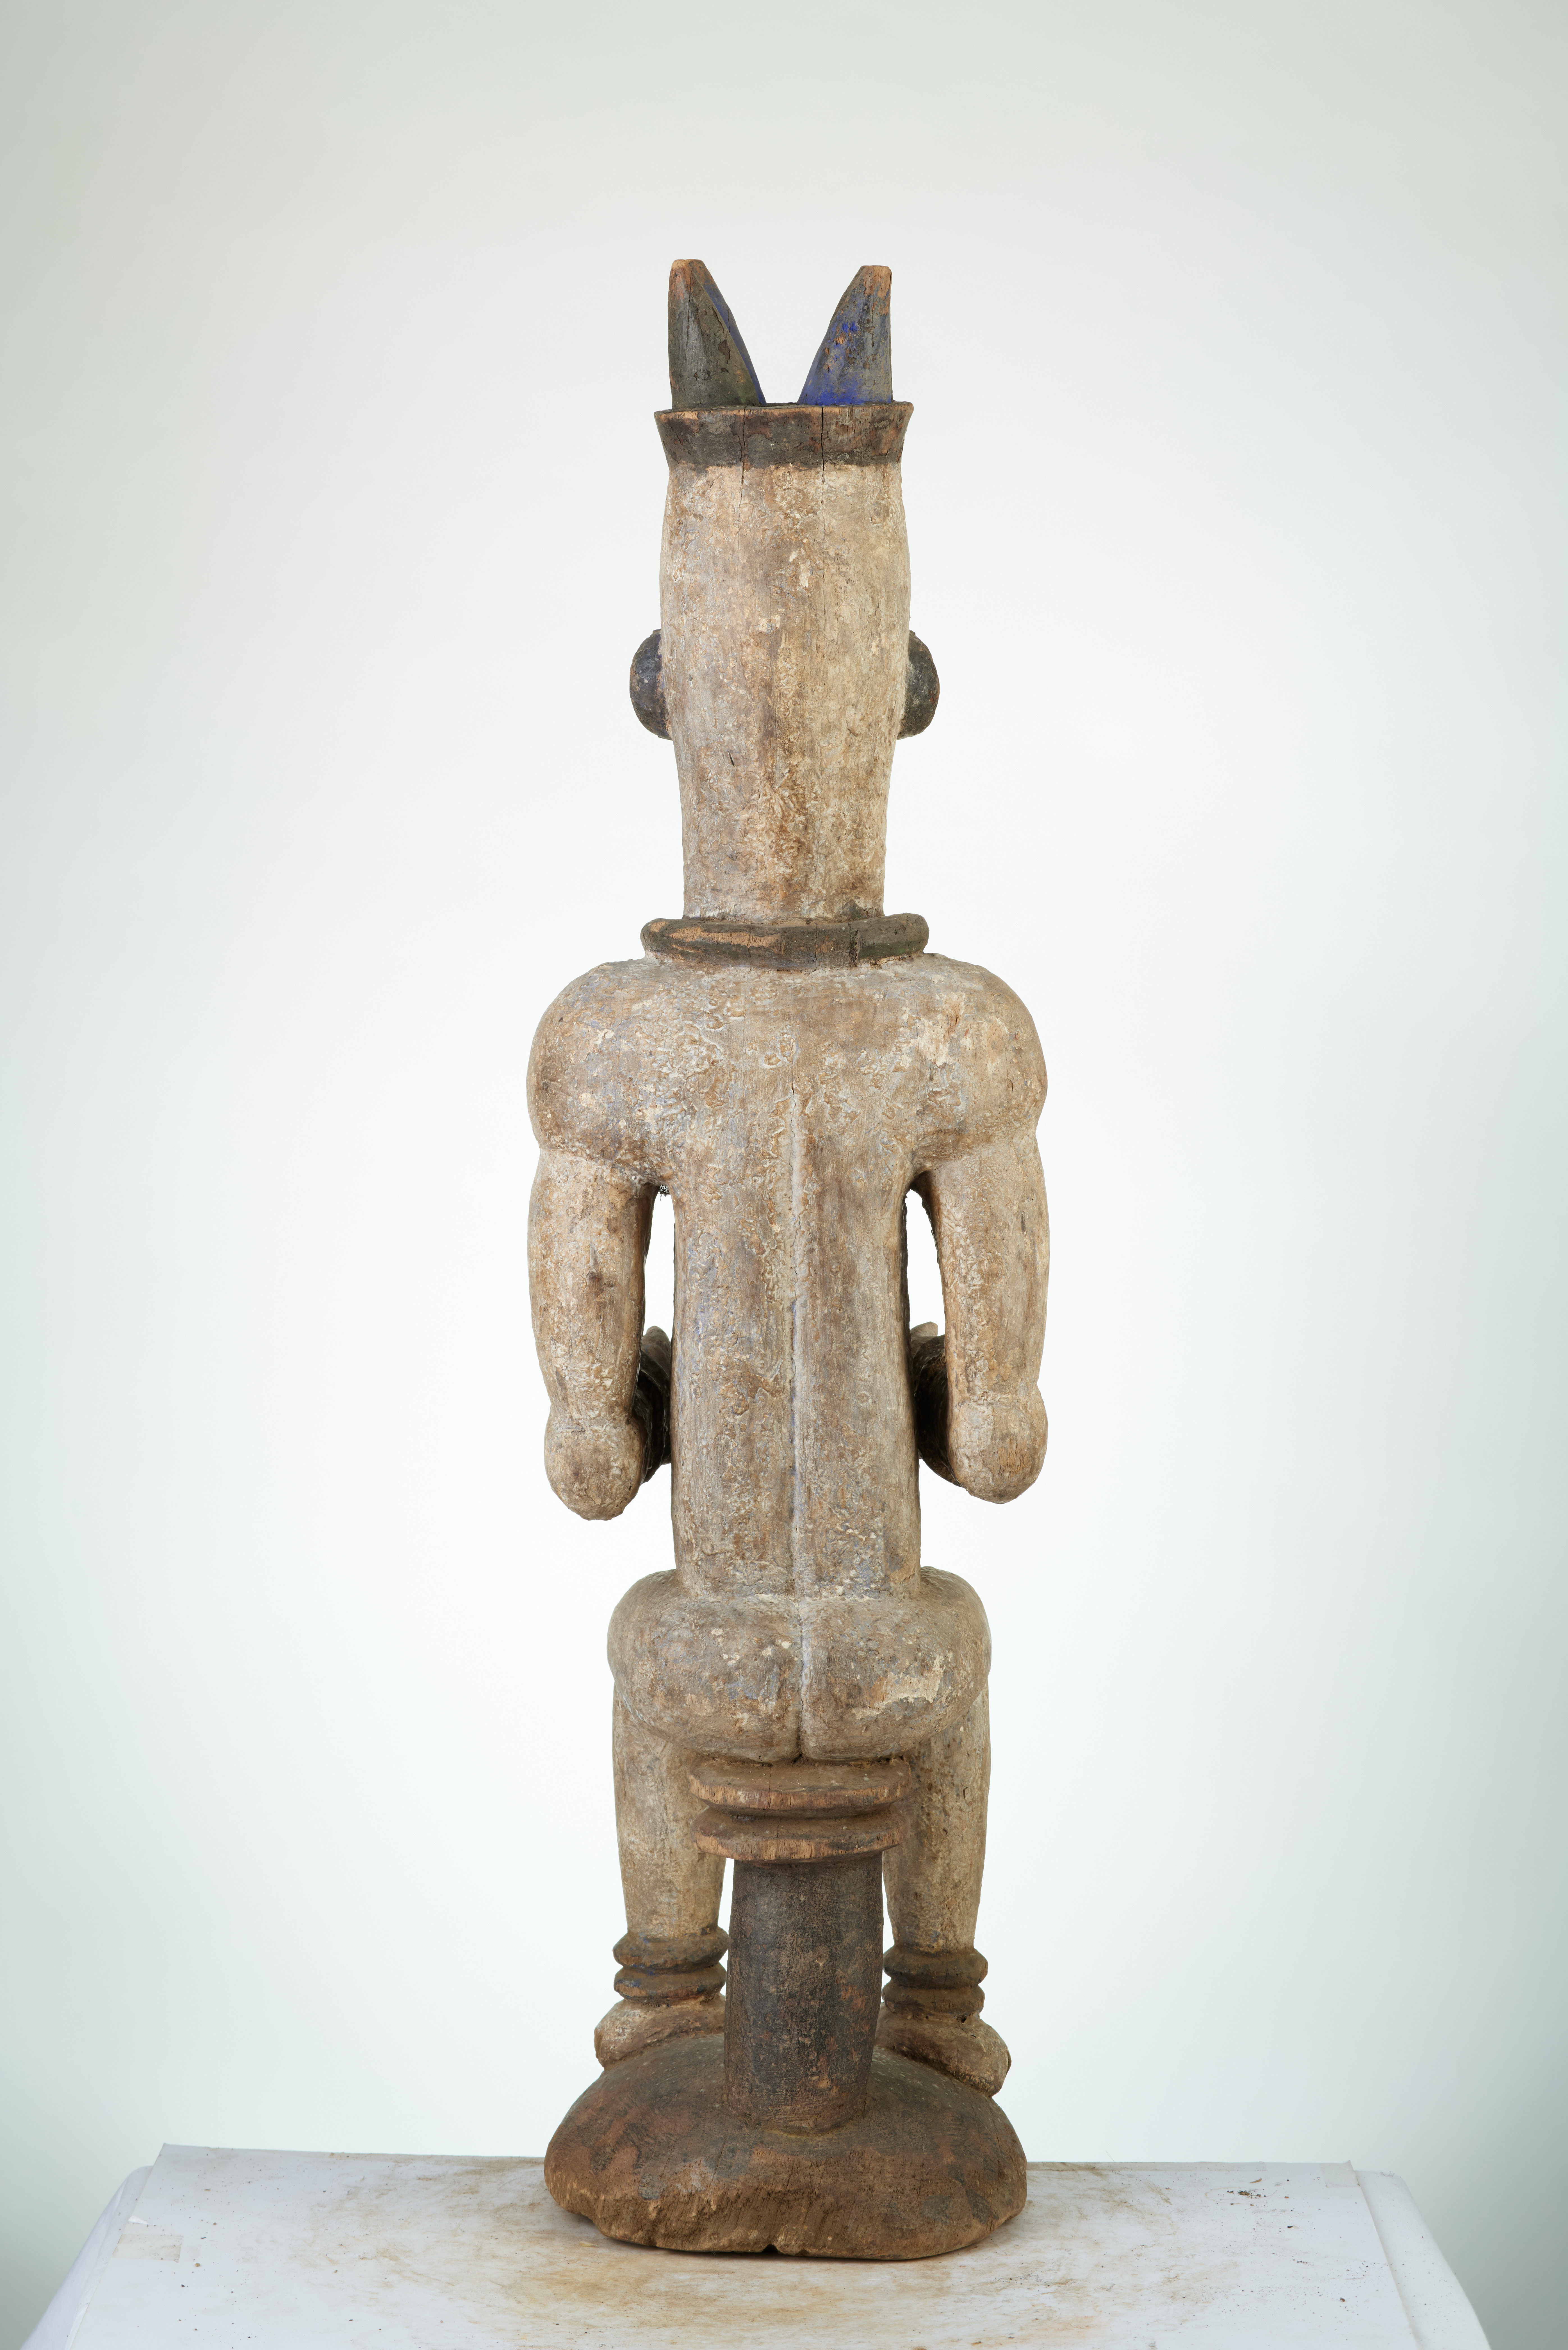 Urhobo (statue), d`afrique : Nigéria., statuette Urhobo (statue), masque ancien africain Urhobo (statue), art du Nigéria. - Art Africain, collection privées Belgique. Statue africaine de la tribu des Urhobo (statue), provenant du Nigéria., 493/537. Cette statue est typiquement Urhobo avec ses scarifications verticales bleues et brunes sur le front ,La statue représentant EDJO,un esprit ou une figure d